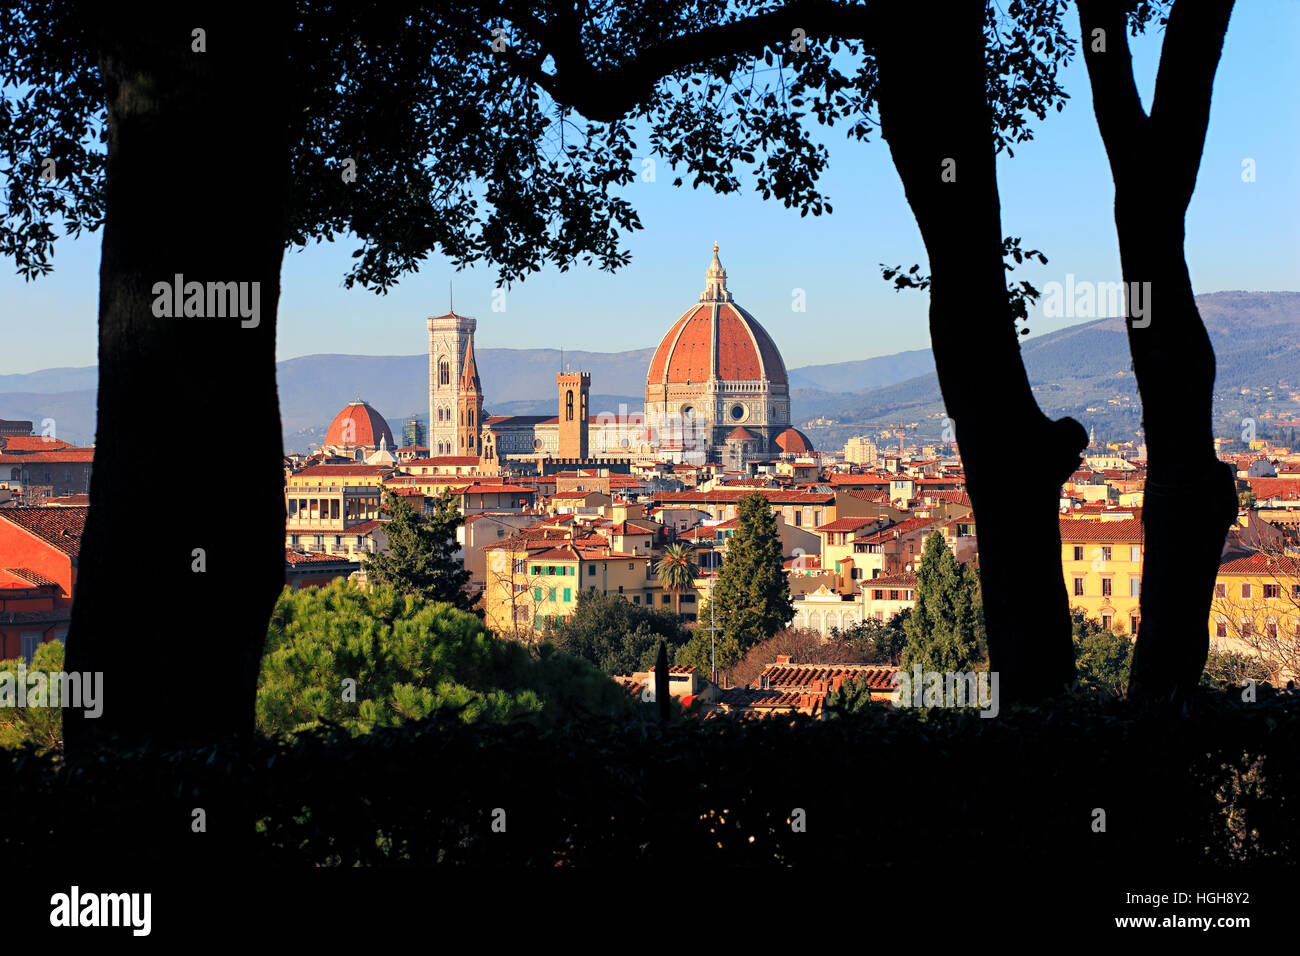 Firenze, cattedrale di Santa Maria del Fiore trough the trees in Tuscany, Italy Stock Photo